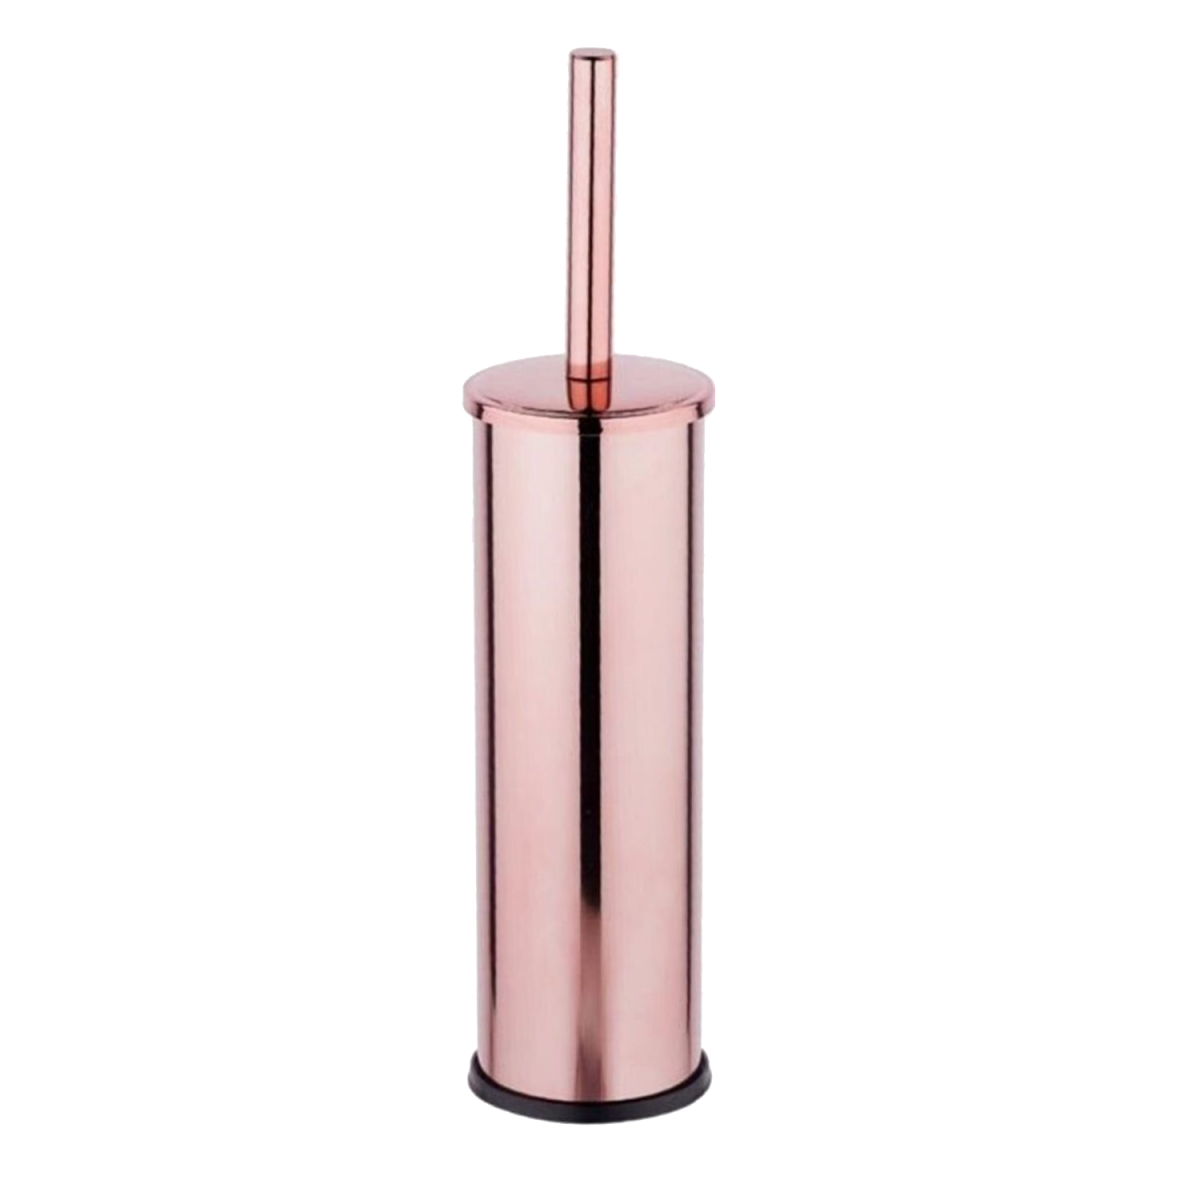 FKN Papatya Rose Klozet Fırçası Yüzey Rengi: Rose Kolay temizlenebilir. PASLANMAZ 2 Yıl Garanti ISO 9001:2008 Kalite Yönetim sistemi. MADE IN TURKEY Ürün Ölçüleri Ürün yüksekliği (A): 40 cm  Ürün genişliği (B): 8 cm